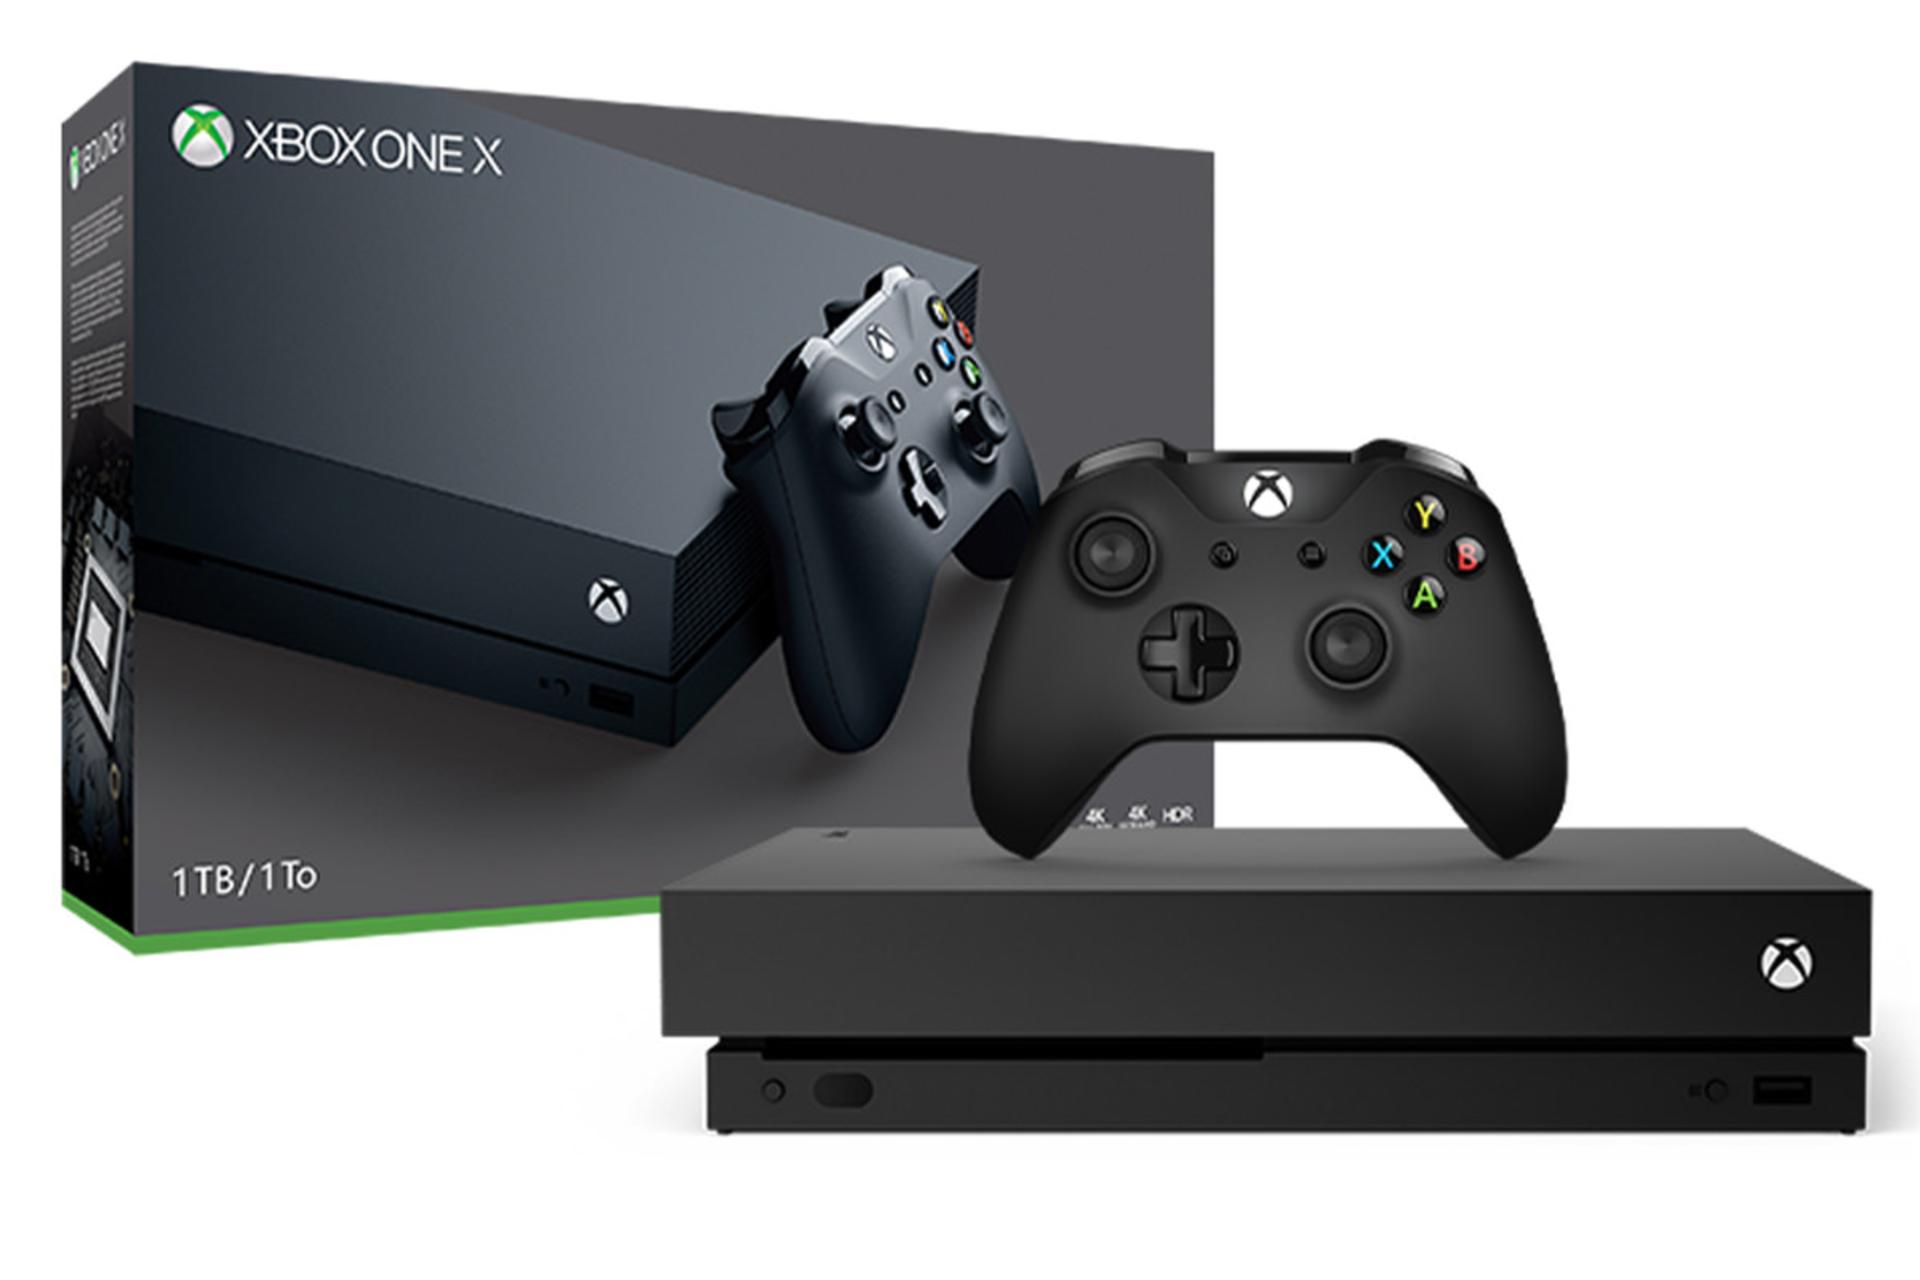 مرجع متخصصين ايران ايكس باكس وان ايكس مايكروسافت نماي جلو با دسته و جعبه / Microsoft Xbox One X